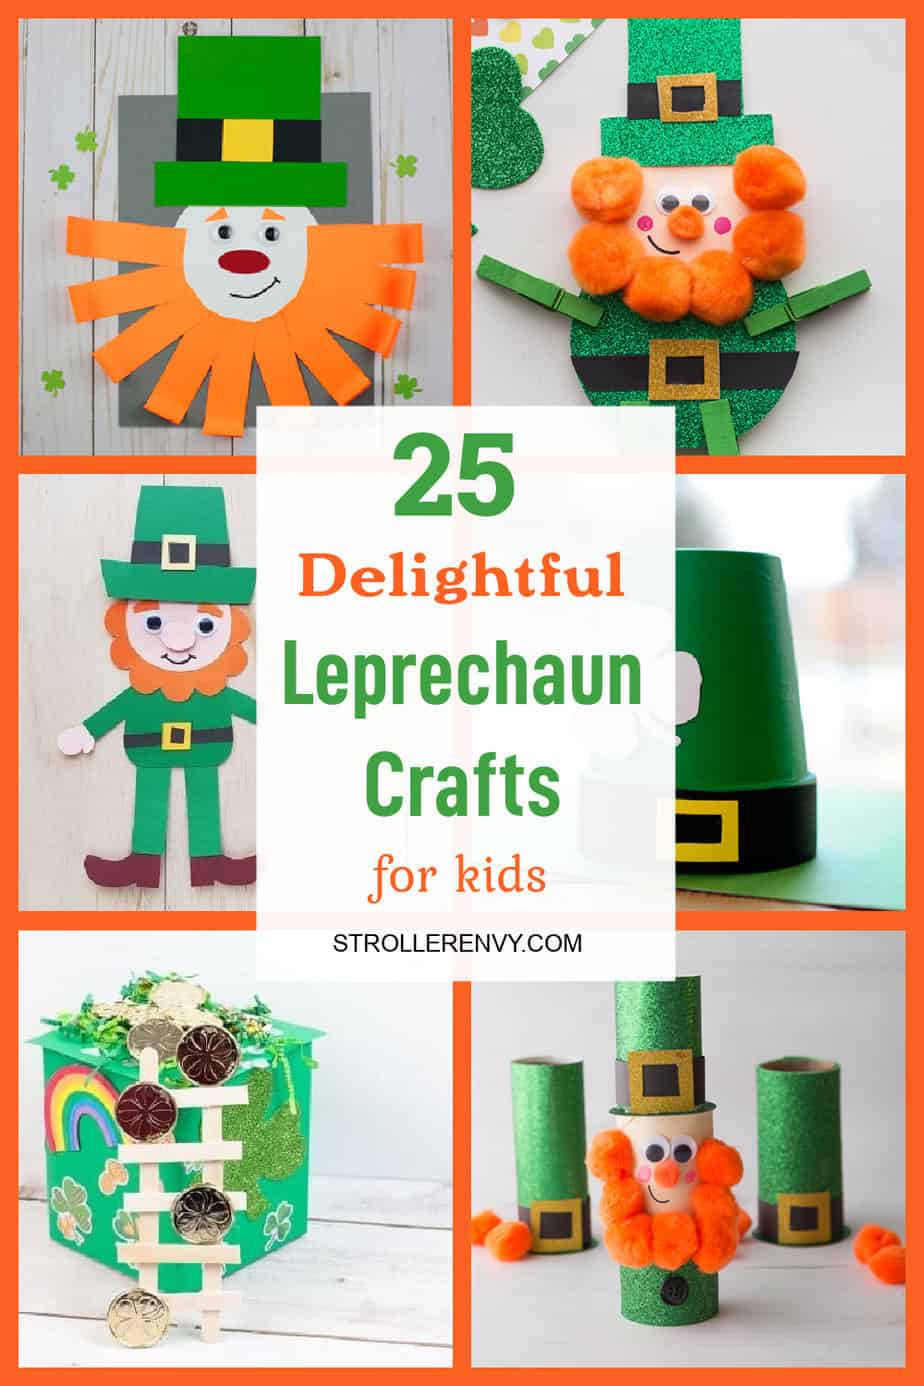 Leprechaun Crafts for Kids